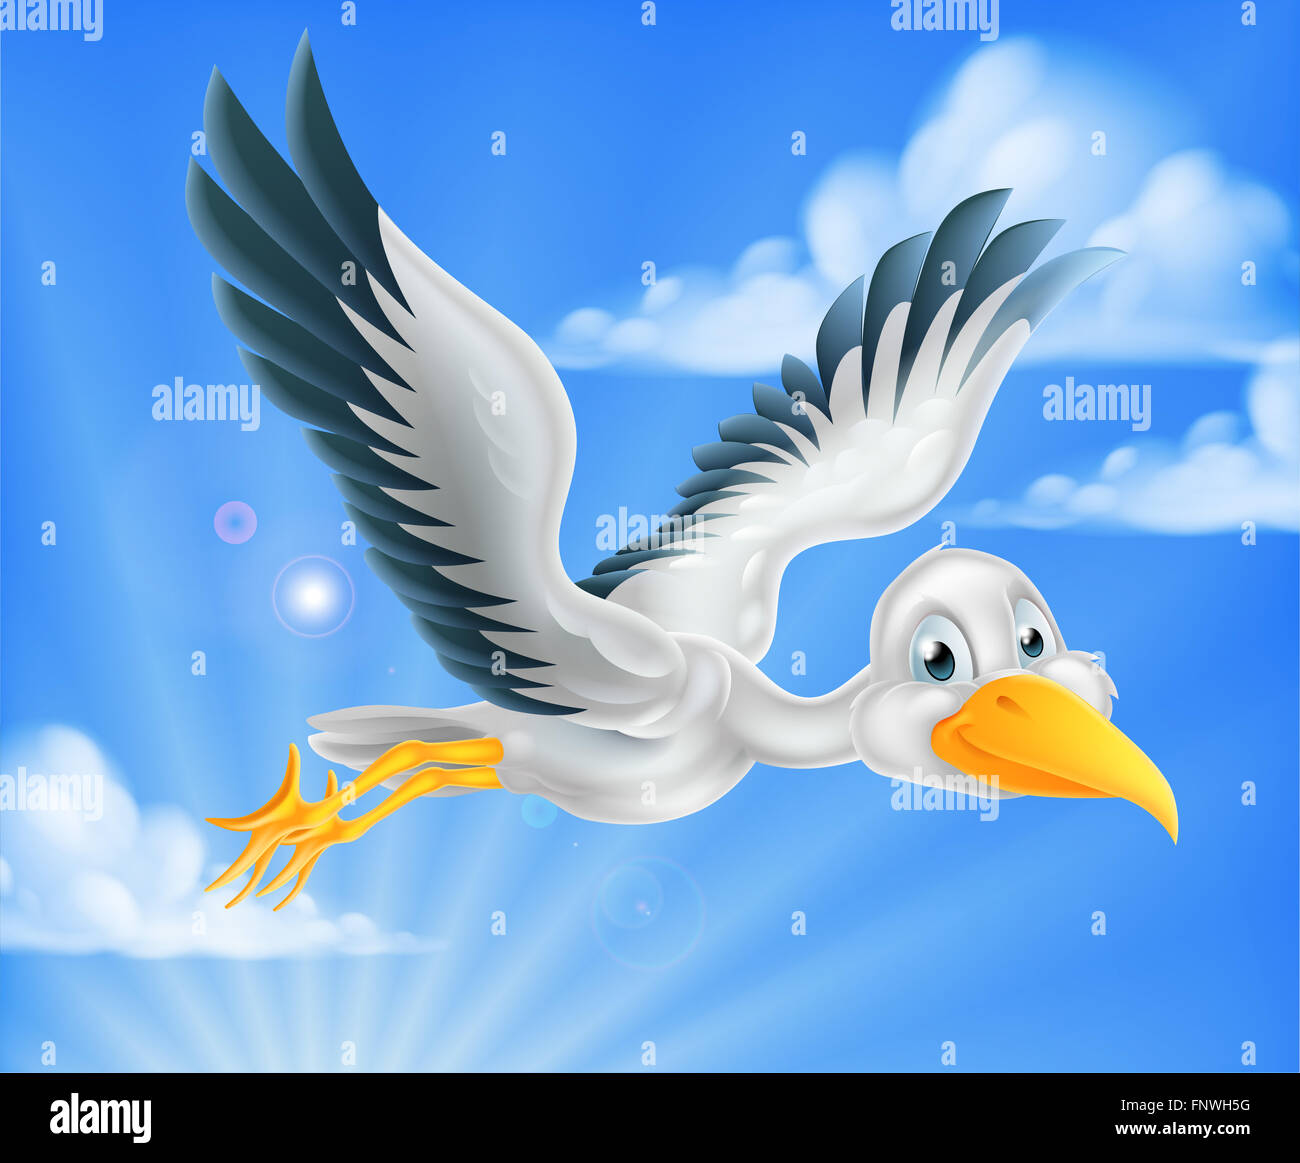 Une bonne caricature stork bird personnage animal volant dans le ciel Banque D'Images